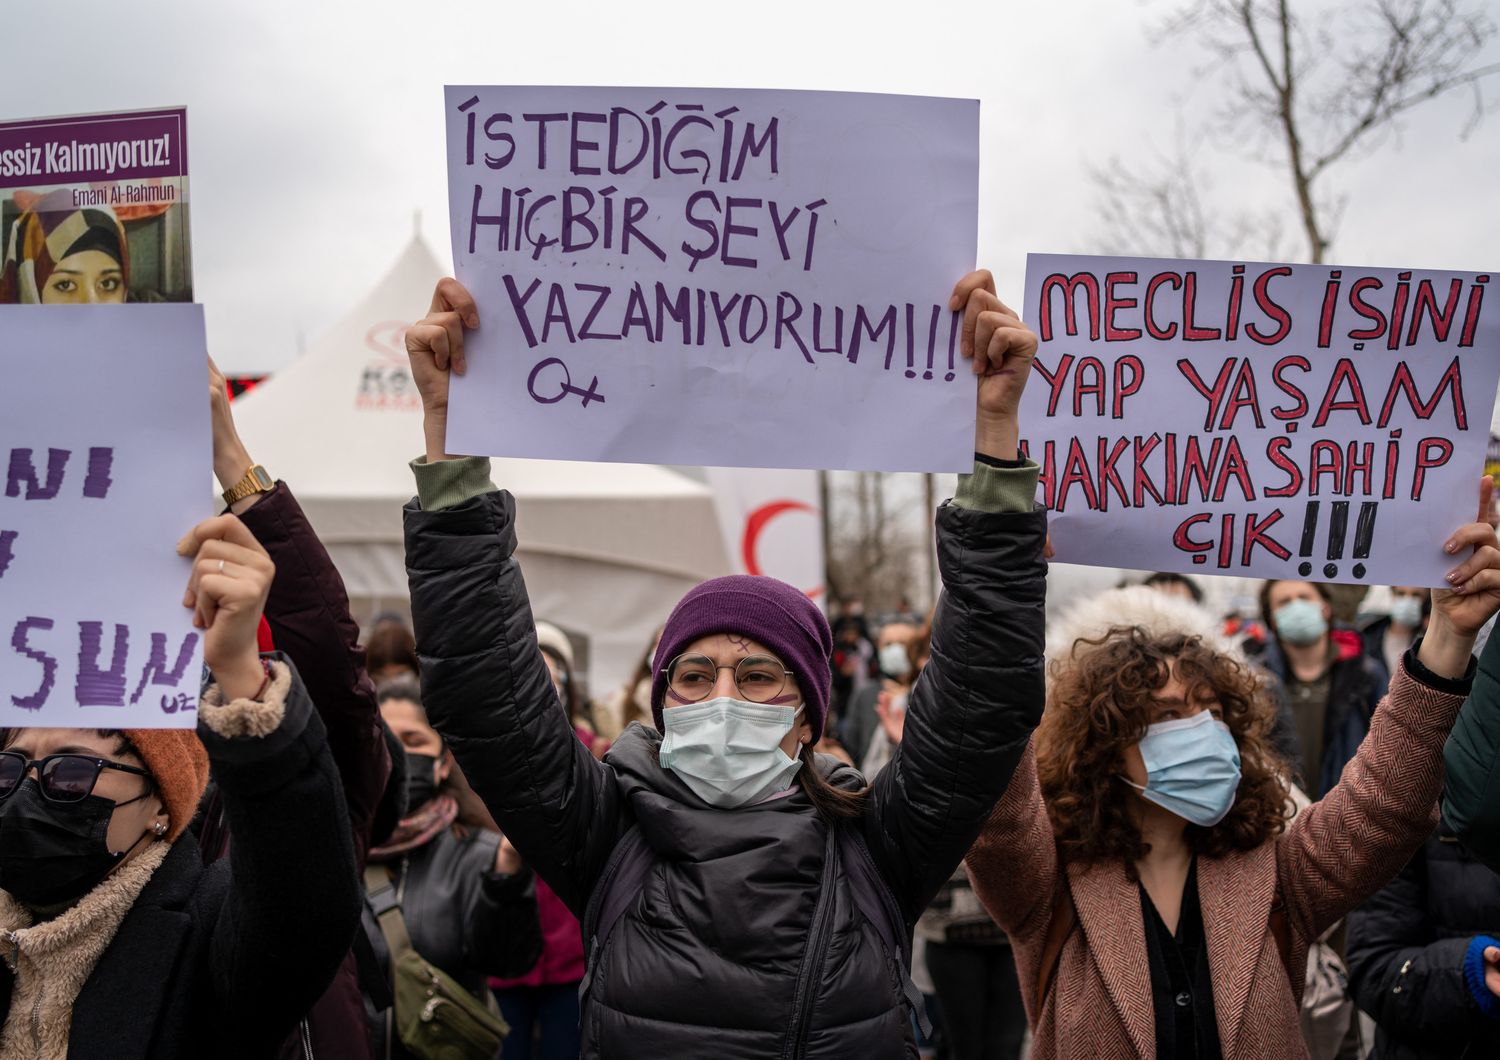 Turchia lascia Convenzione Istanbul migliaia protestano